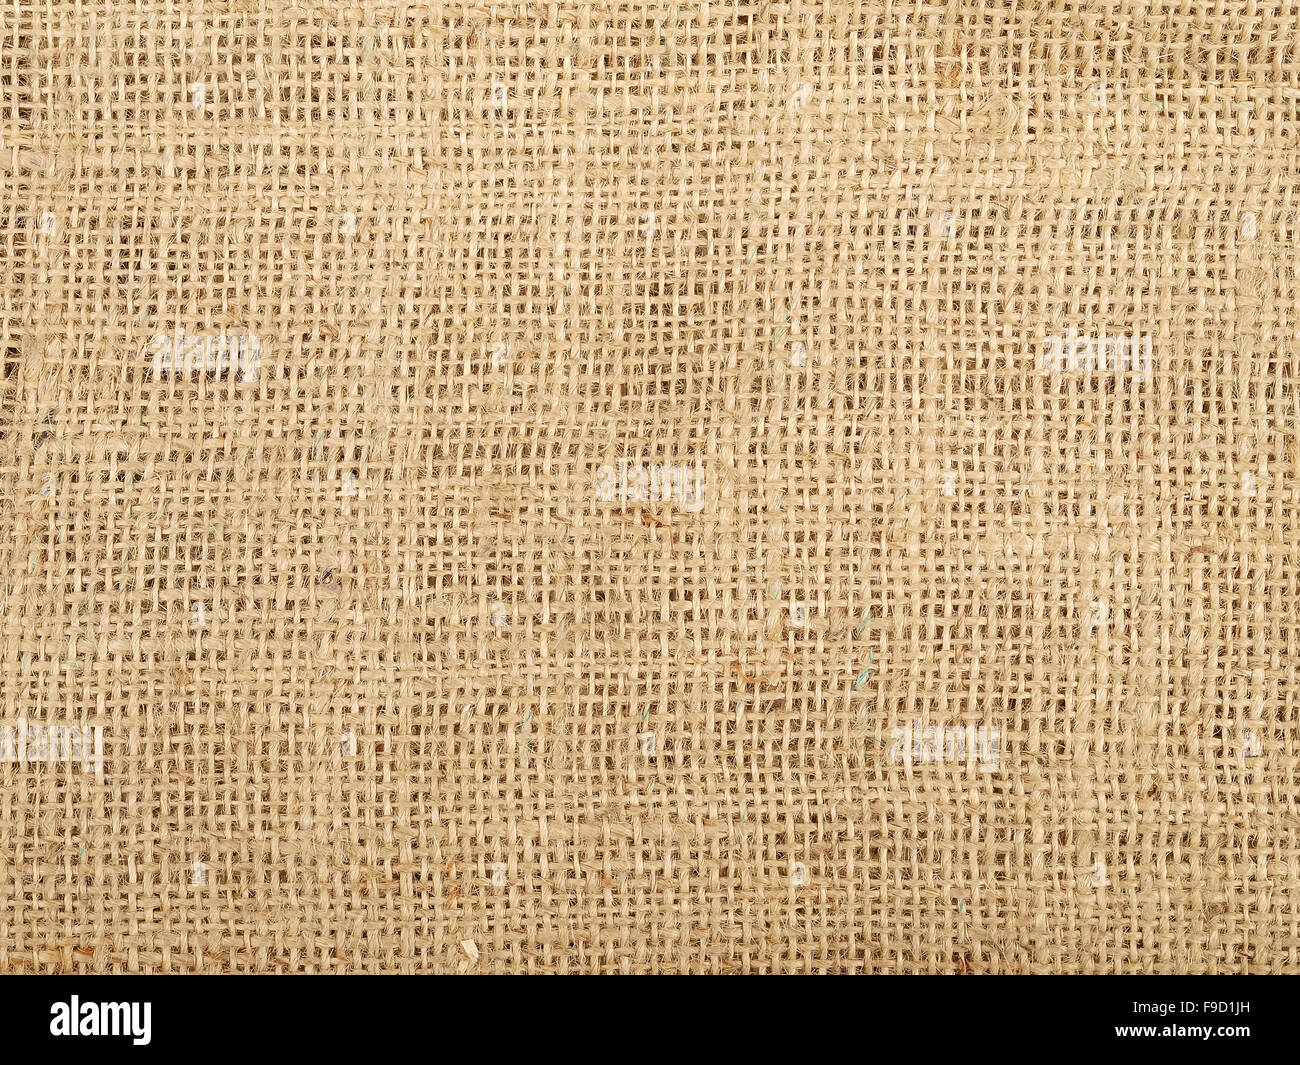 Textura del fondo de arpillera, Foto de estudio Foto de stock